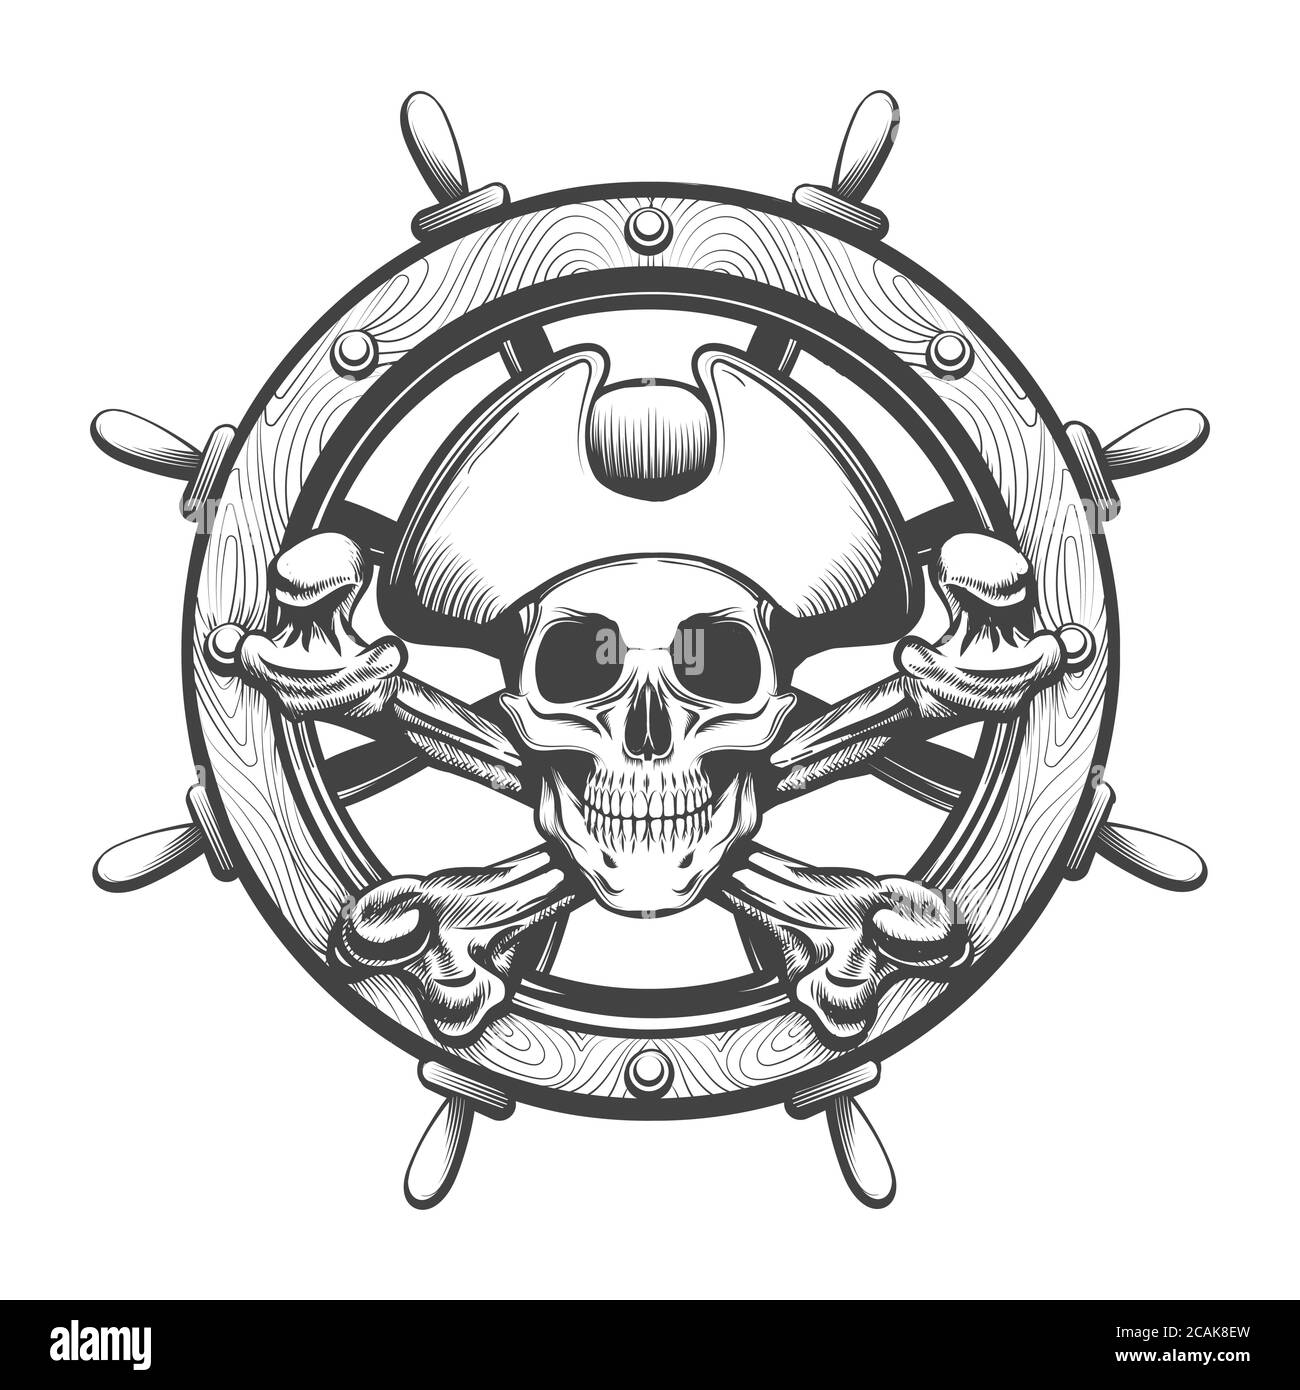 Cranio pirata con i denti incrociati e tatuaggio con la ruota della nave. Illustrazione vettoriale. Illustrazione Vettoriale